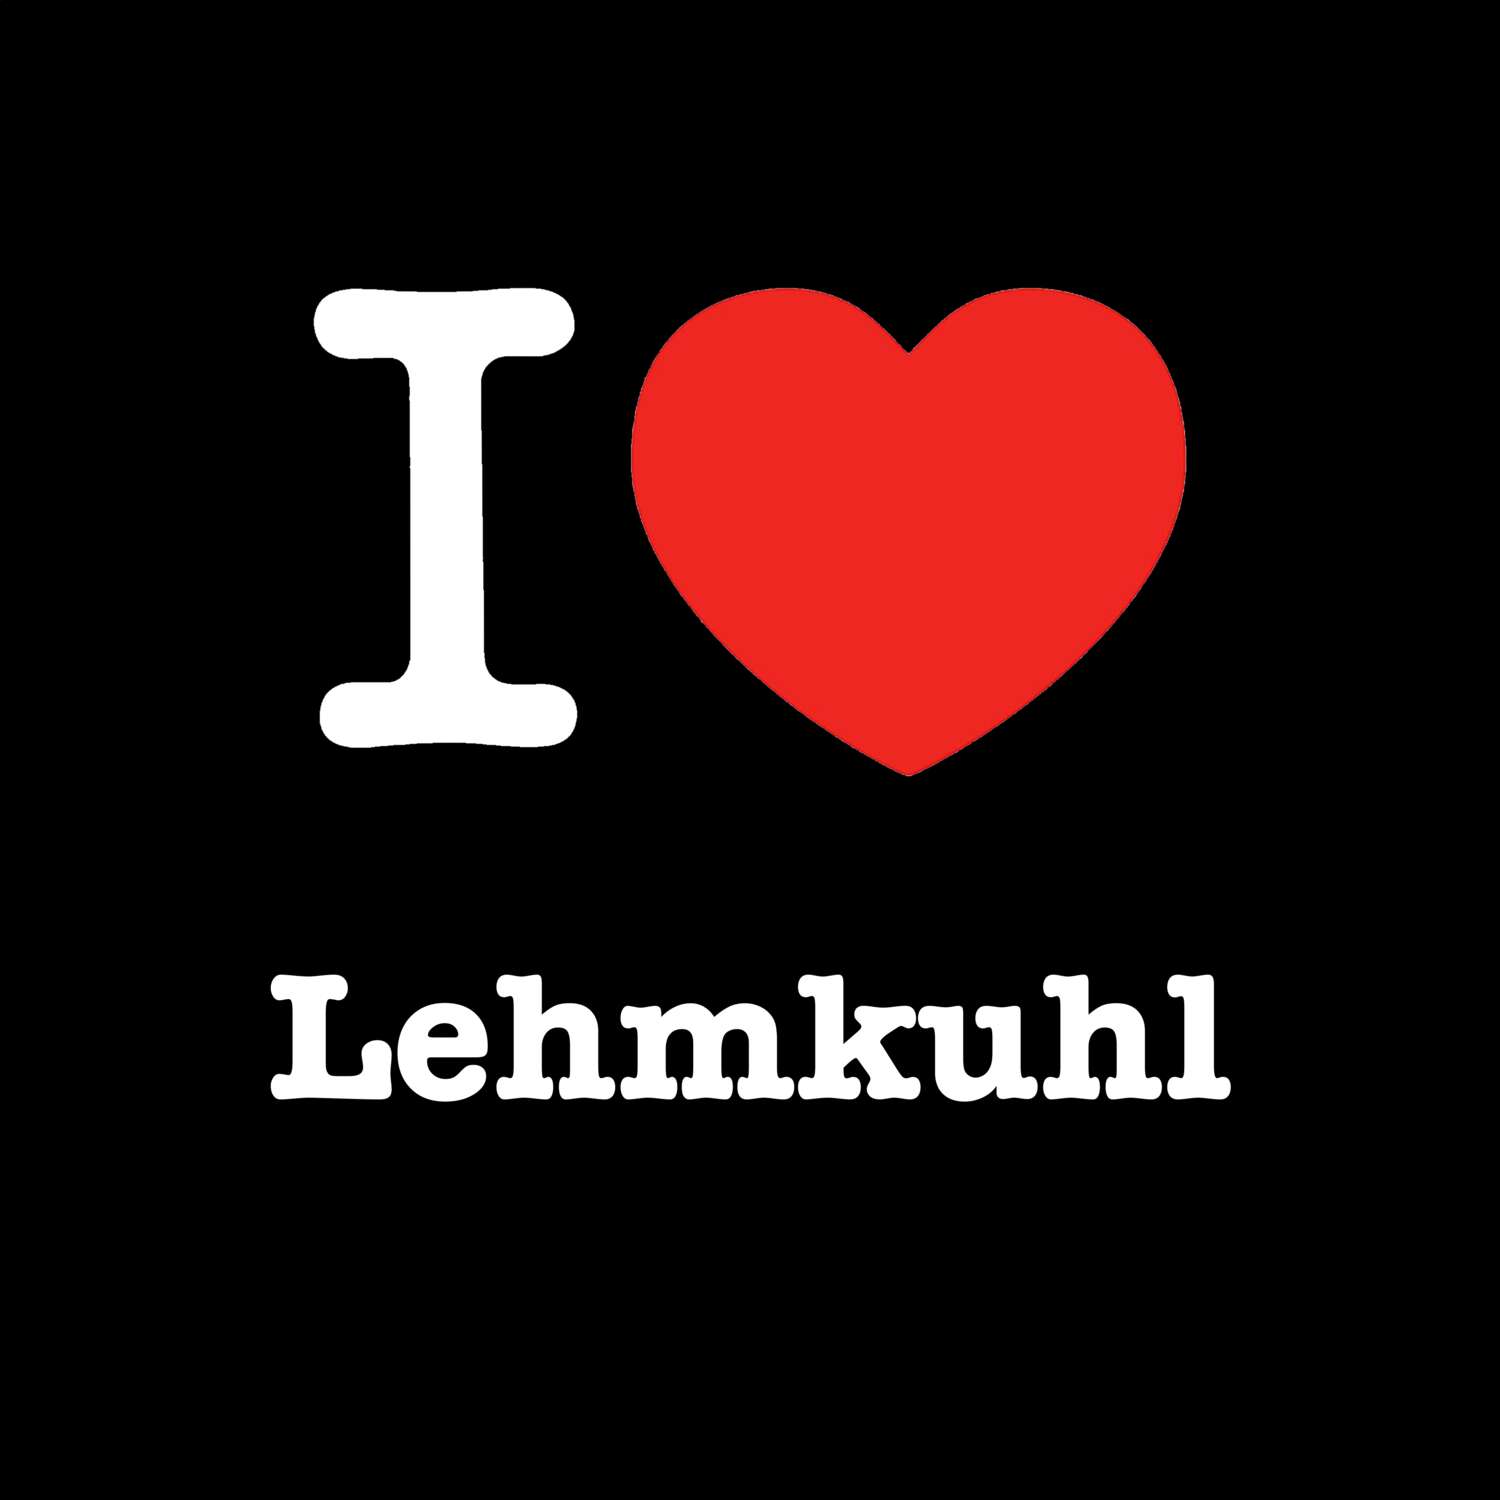 Lehmkuhl T-Shirt »I love«